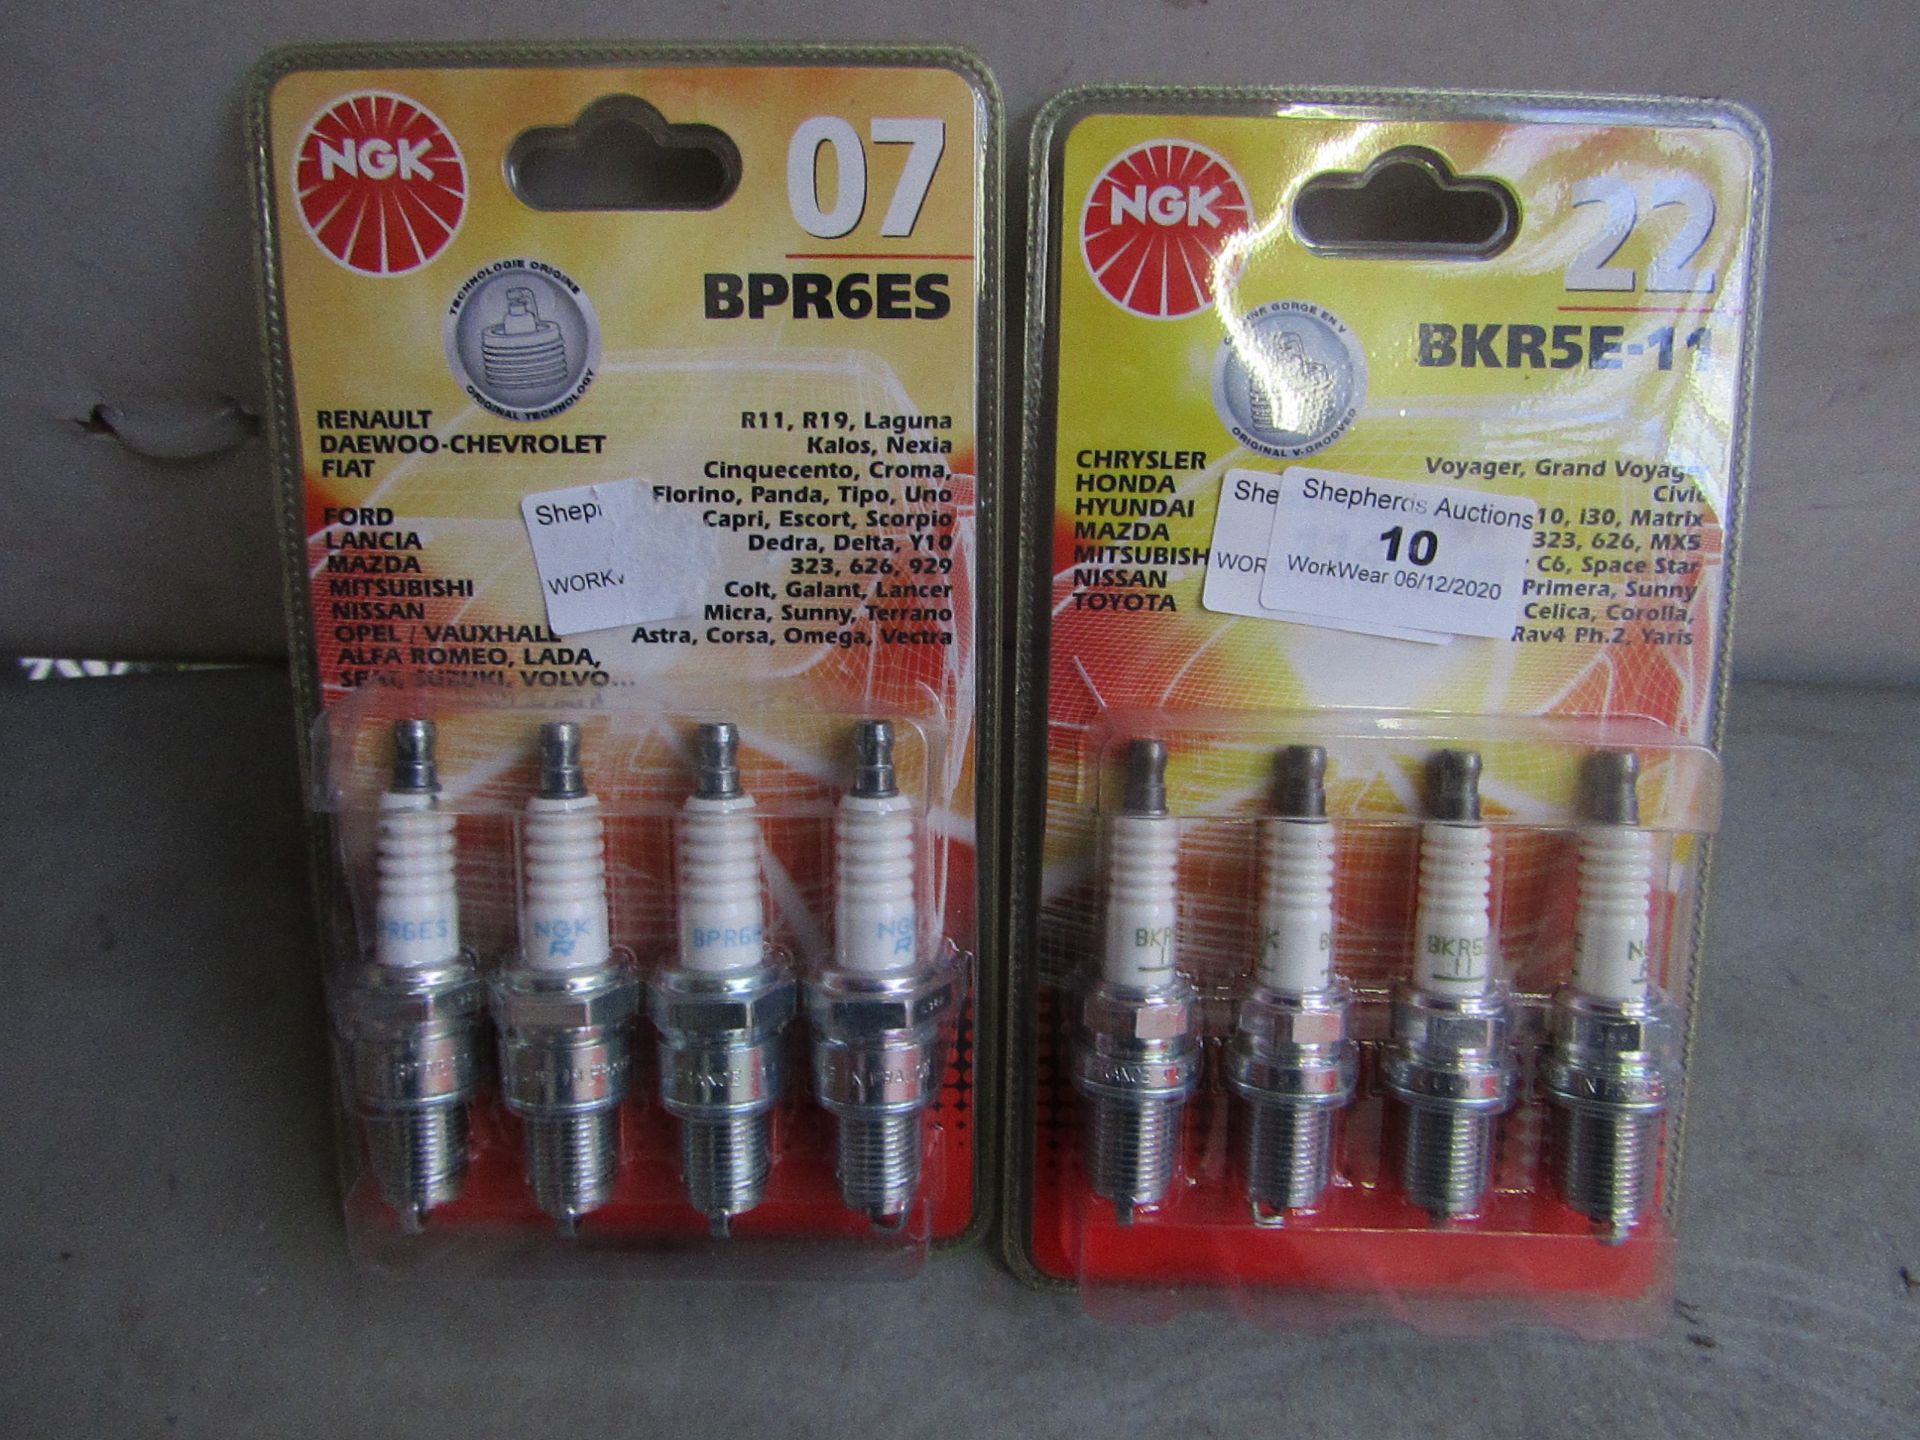 1x NGK - Set of 4 Spark Plugs BPR6ES 07 - Unused & Packaged. 1x NGK - Set of 4 Spark Plugs BKR5E-11